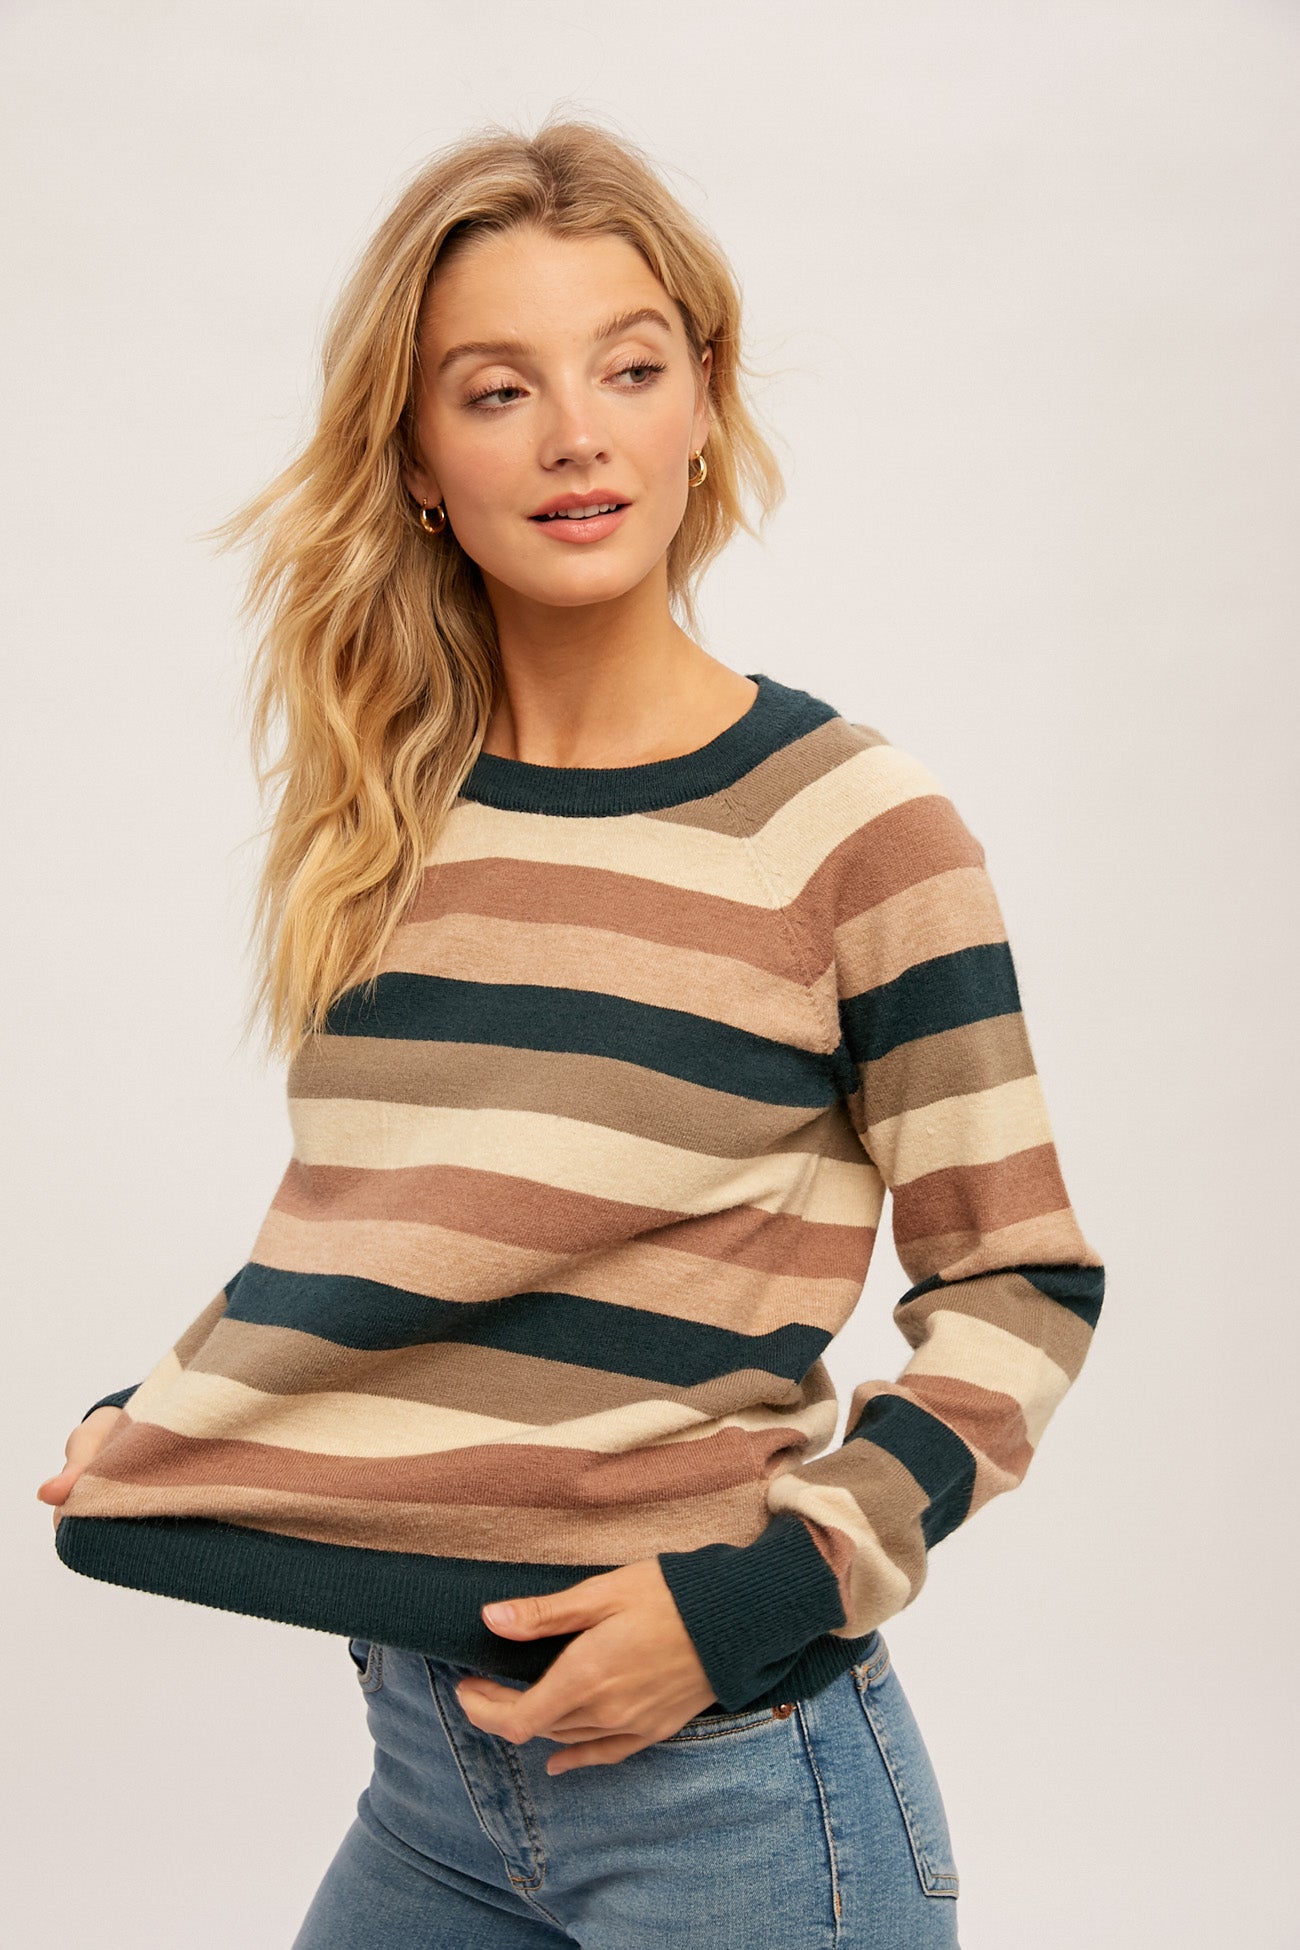 Multi striped color sweater